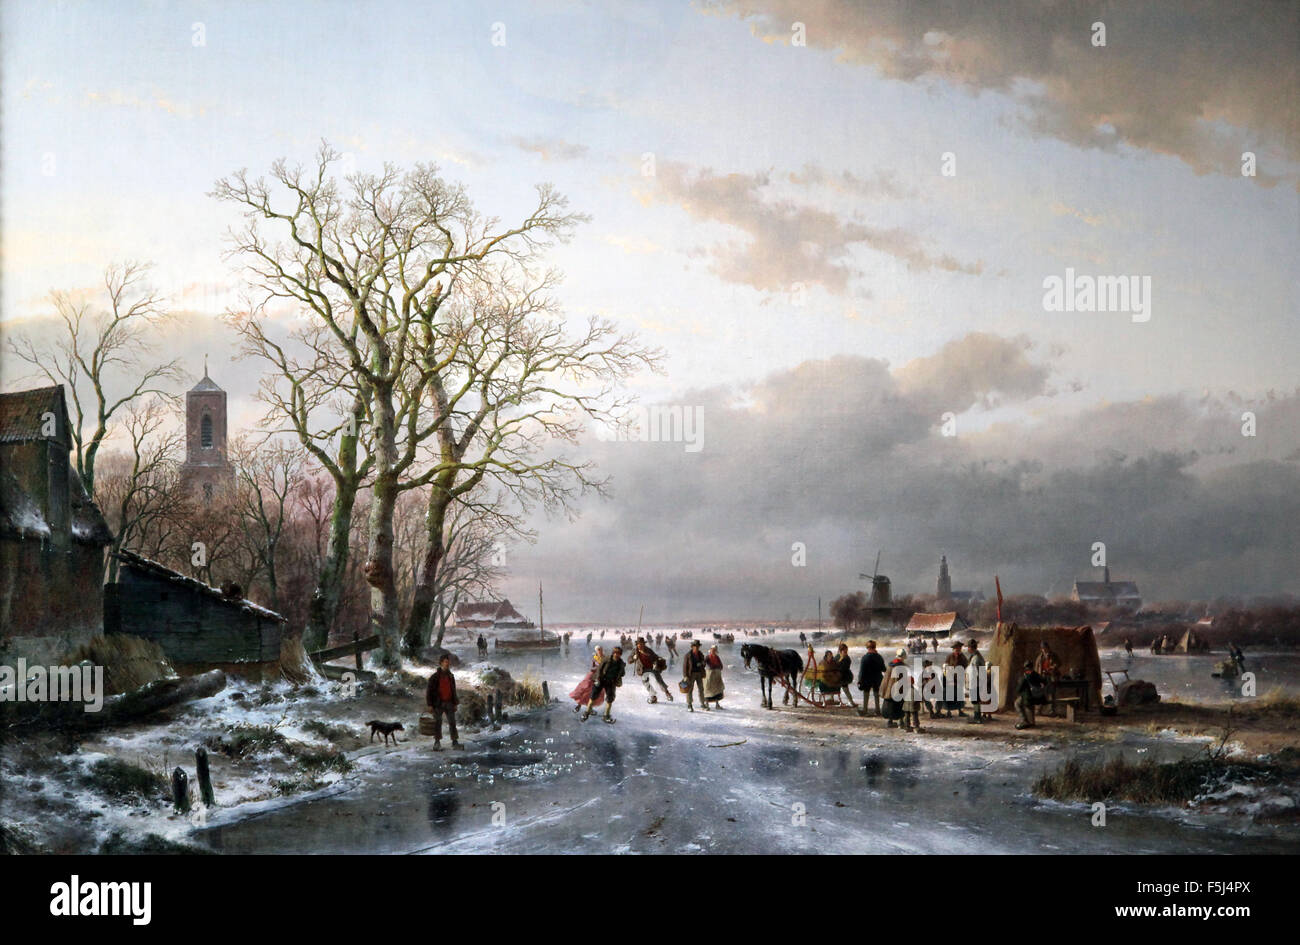 Numerosi pattinatori e una slitta trainata da un rinfresco nei pressi di una città olandese 1857 dipinto di Andreas Schelfhout 1787-1870 pittore olandese, etcher Foto Stock